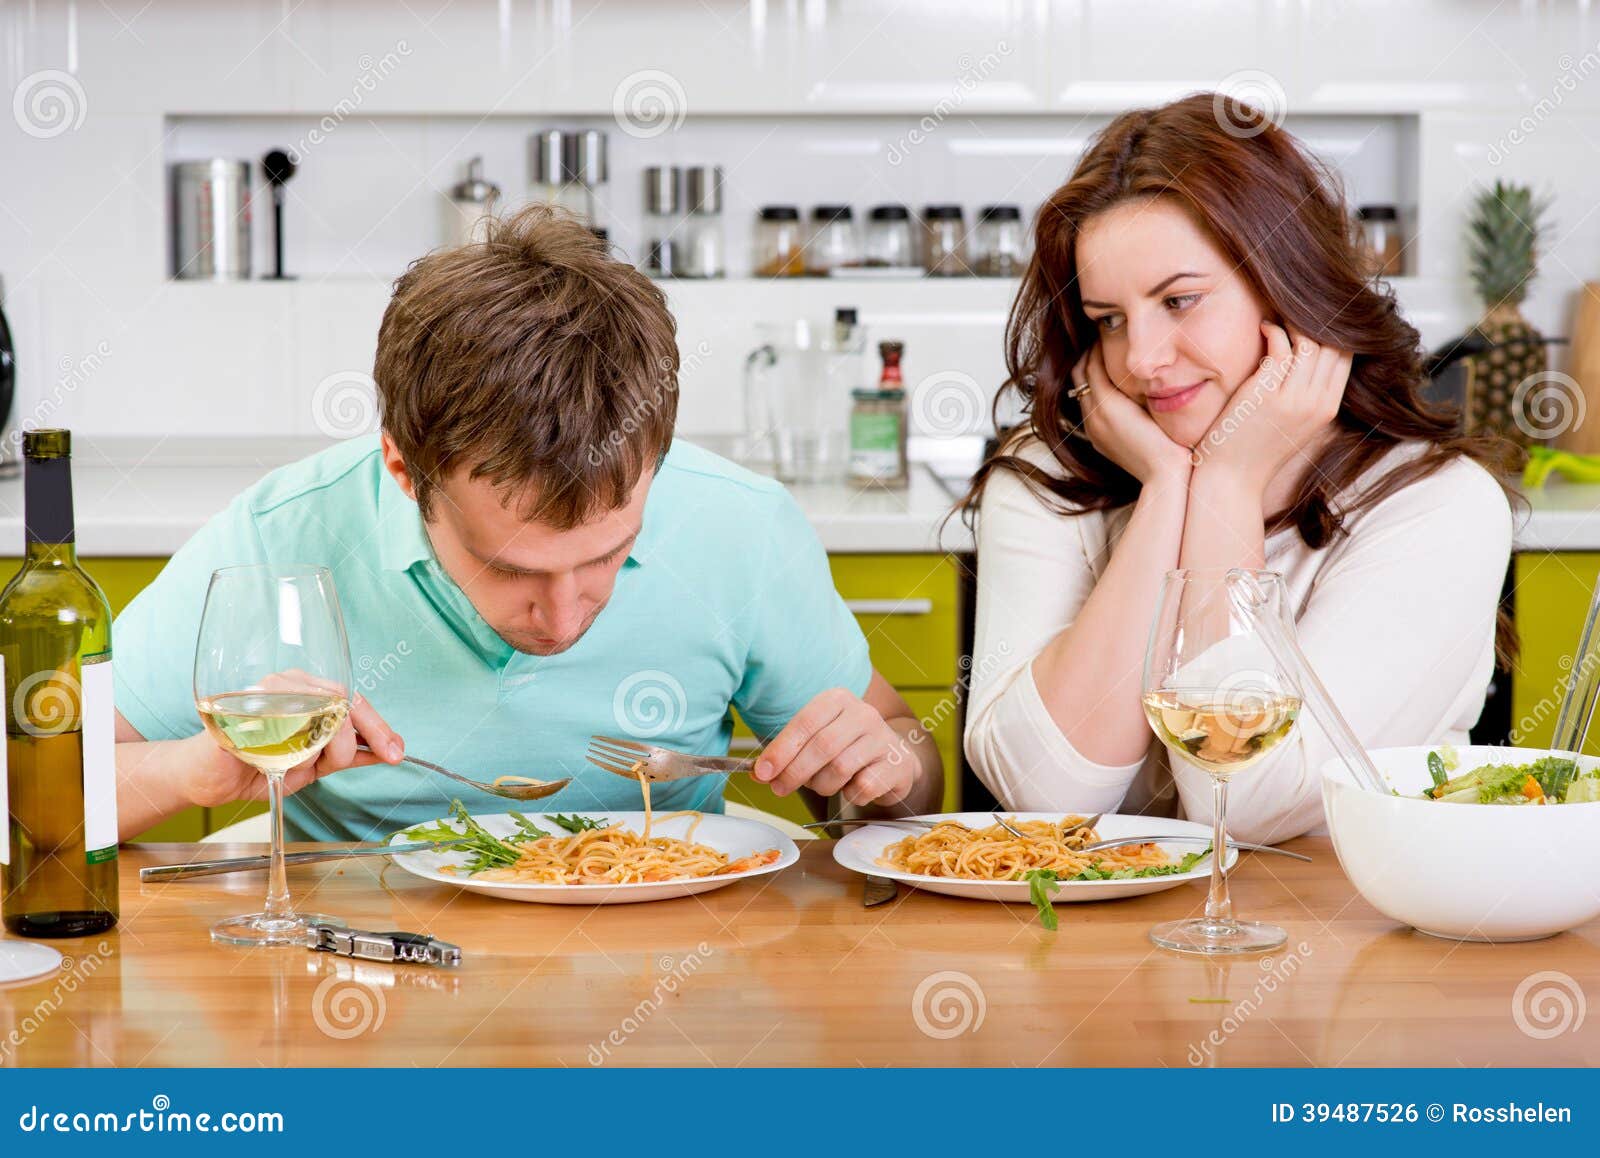 Он хочет ее съесть 35. Мужчина и женщина ужинают. Мужчина и женщина завтракают. Женщина ест мужчину. Муж ужинает на кухне.